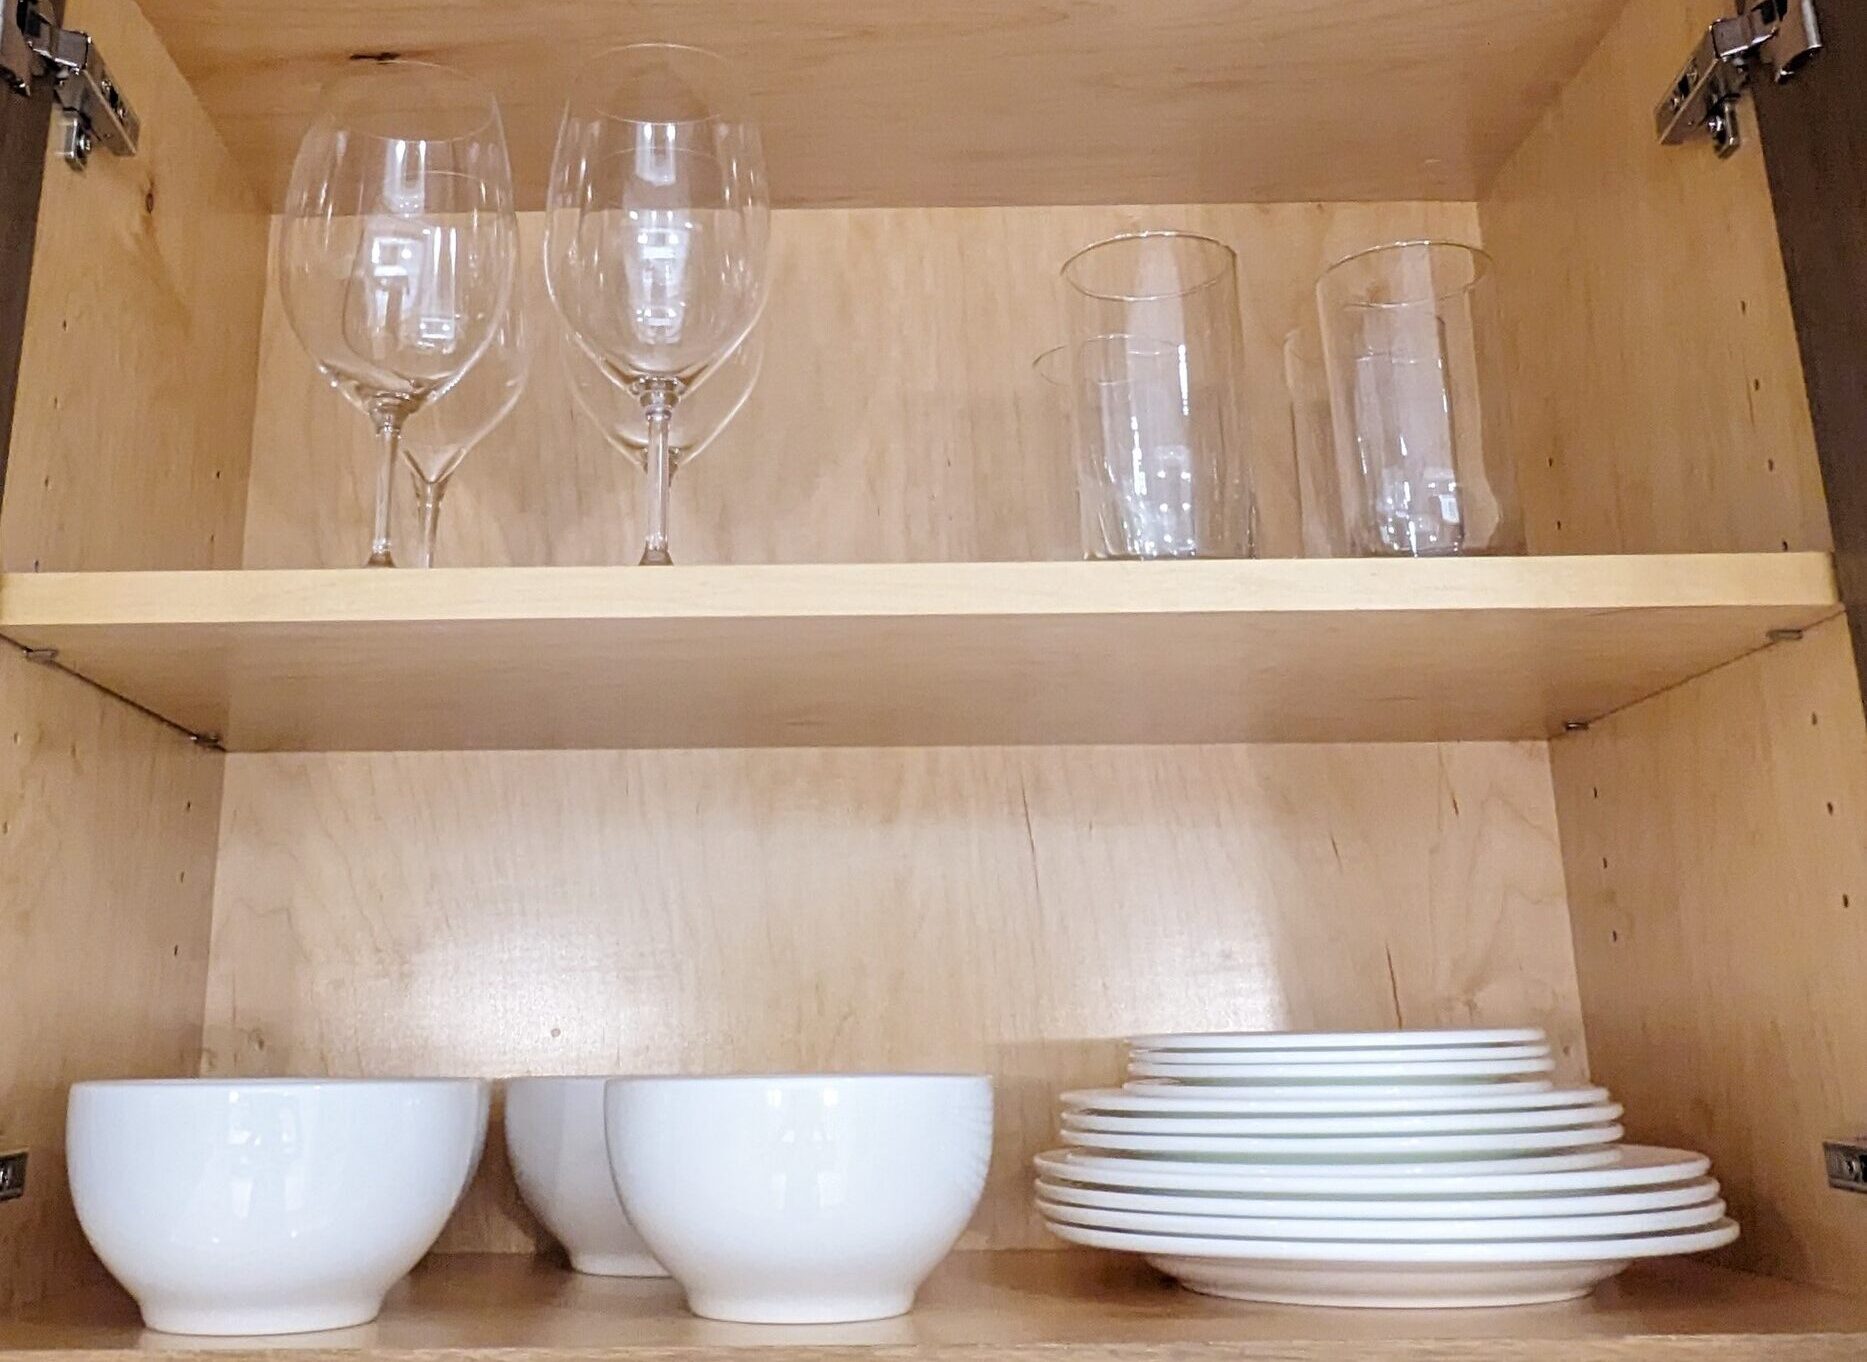 ワイングラス、グラス、各種プレート、ボウル皿